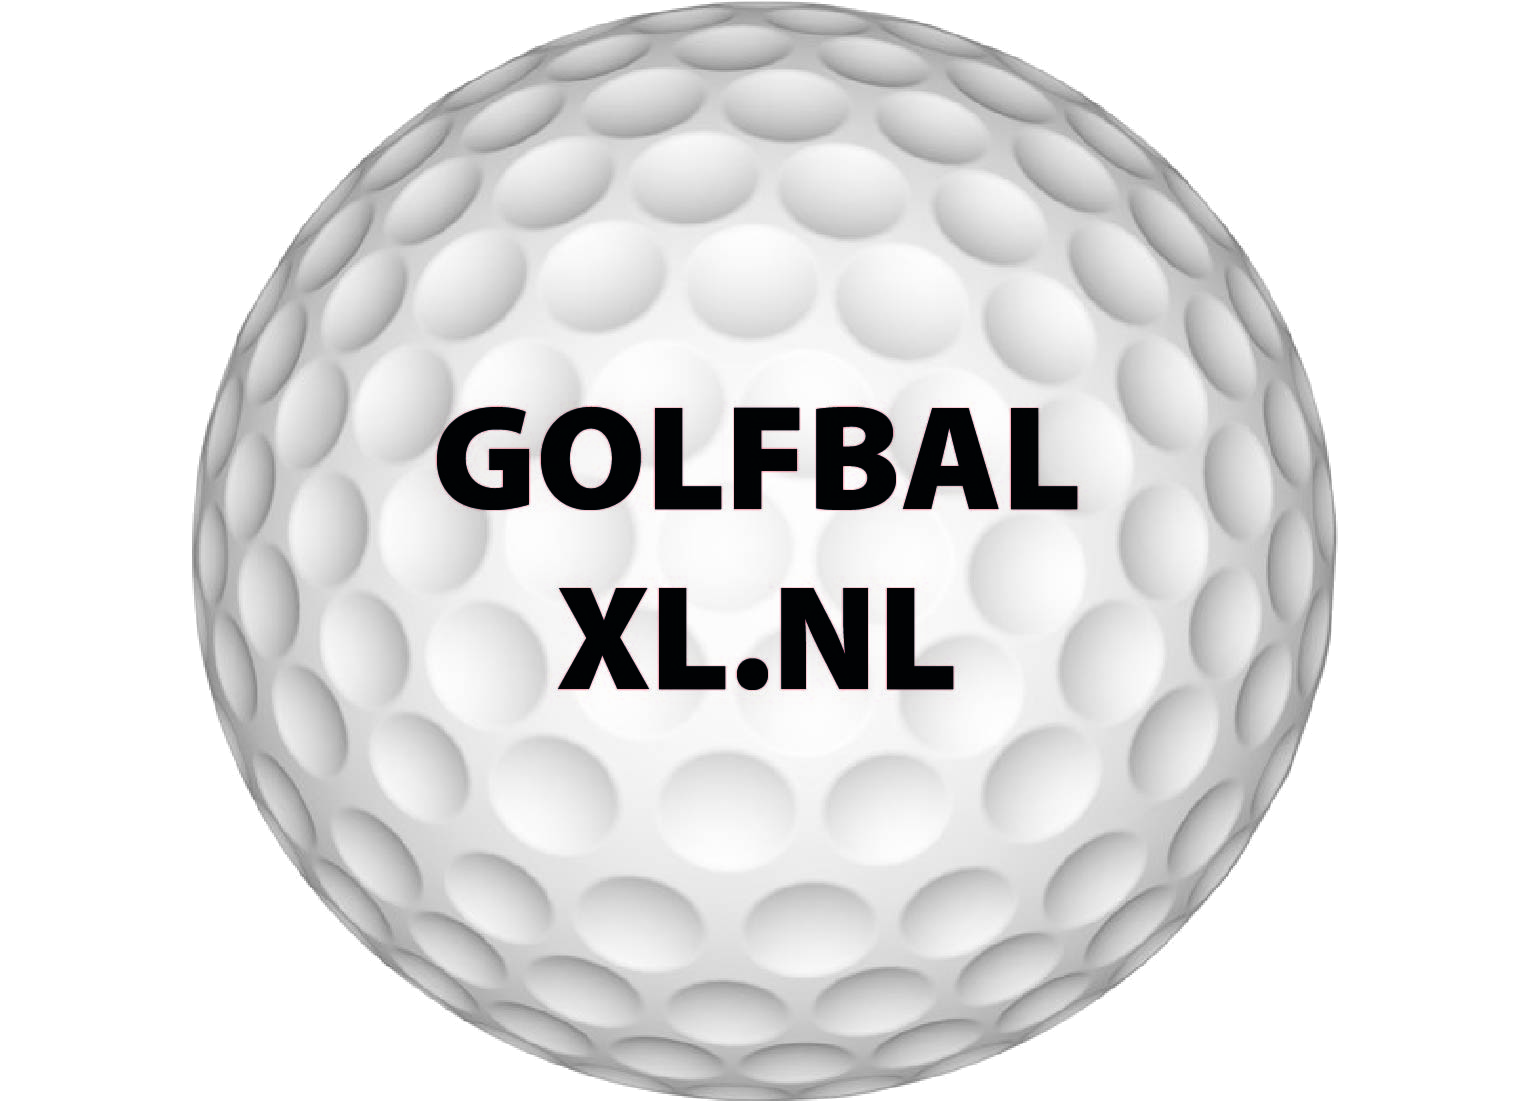 Callaway golfbal laten bedrukken? klaar bij Golfbalxl.nl!